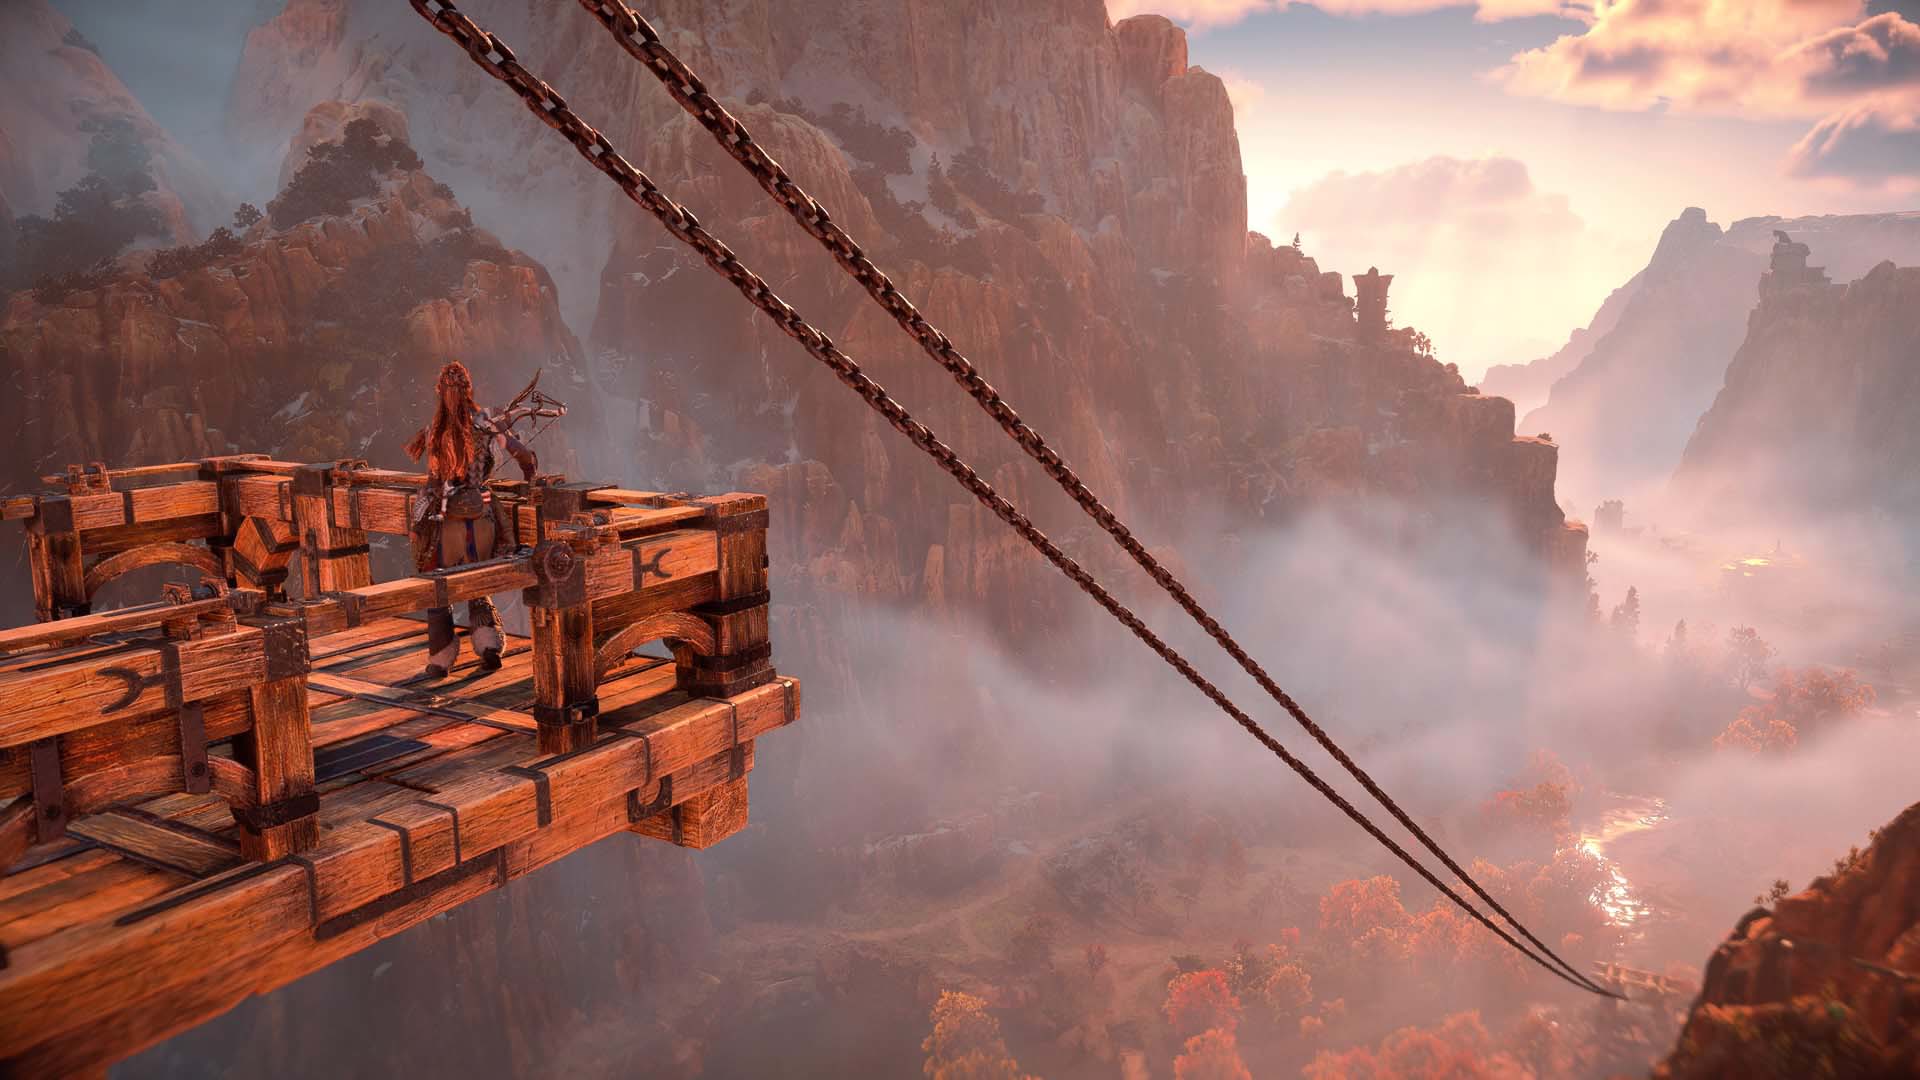 Horizon Forbidden West screenshot